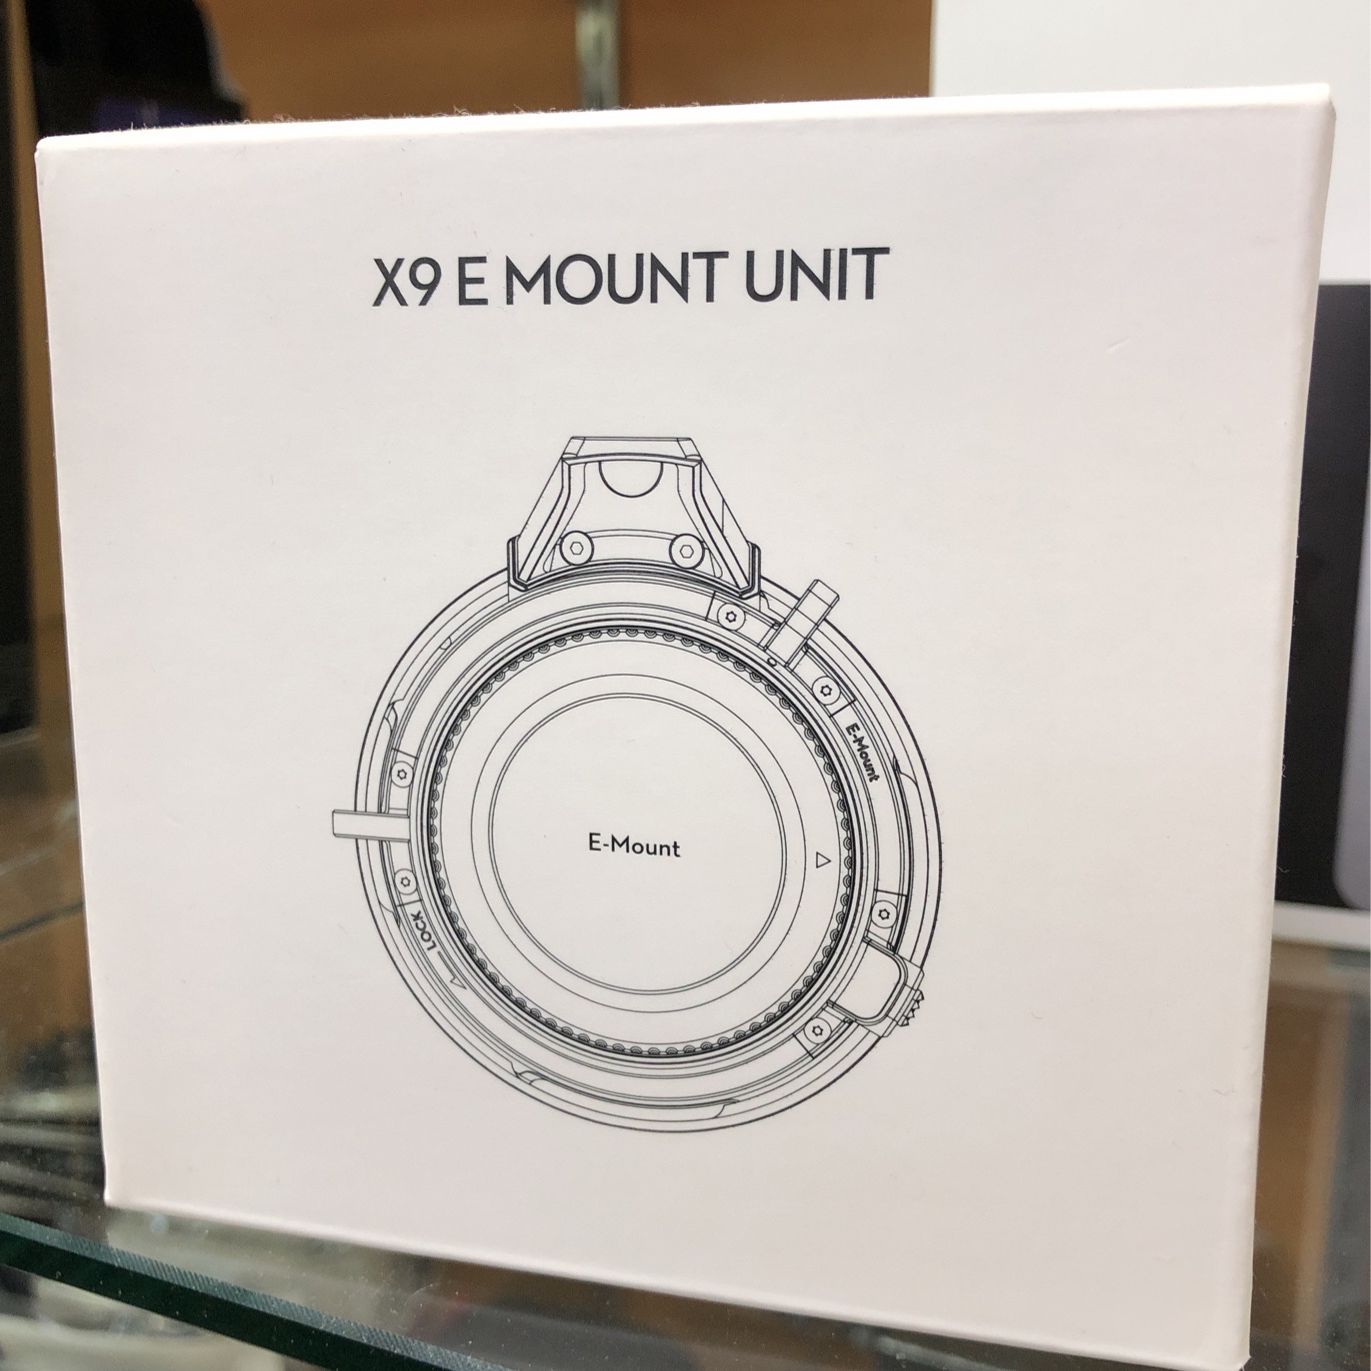 DJI Zenmuse X9 Lens Mount Unit (E-Mount)